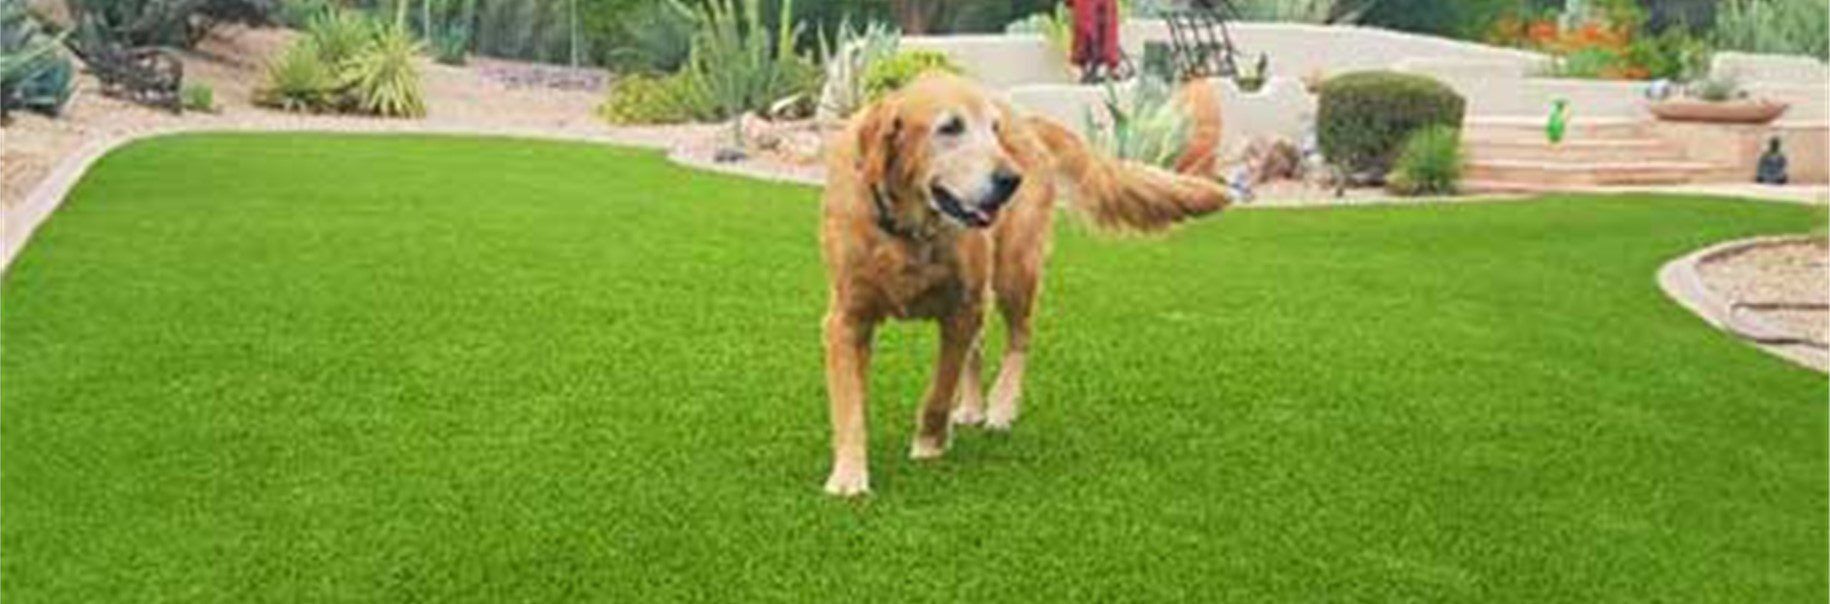 Pet Artificial Grass for Dog Runs & {arls, Kennels, Backyards Riverside